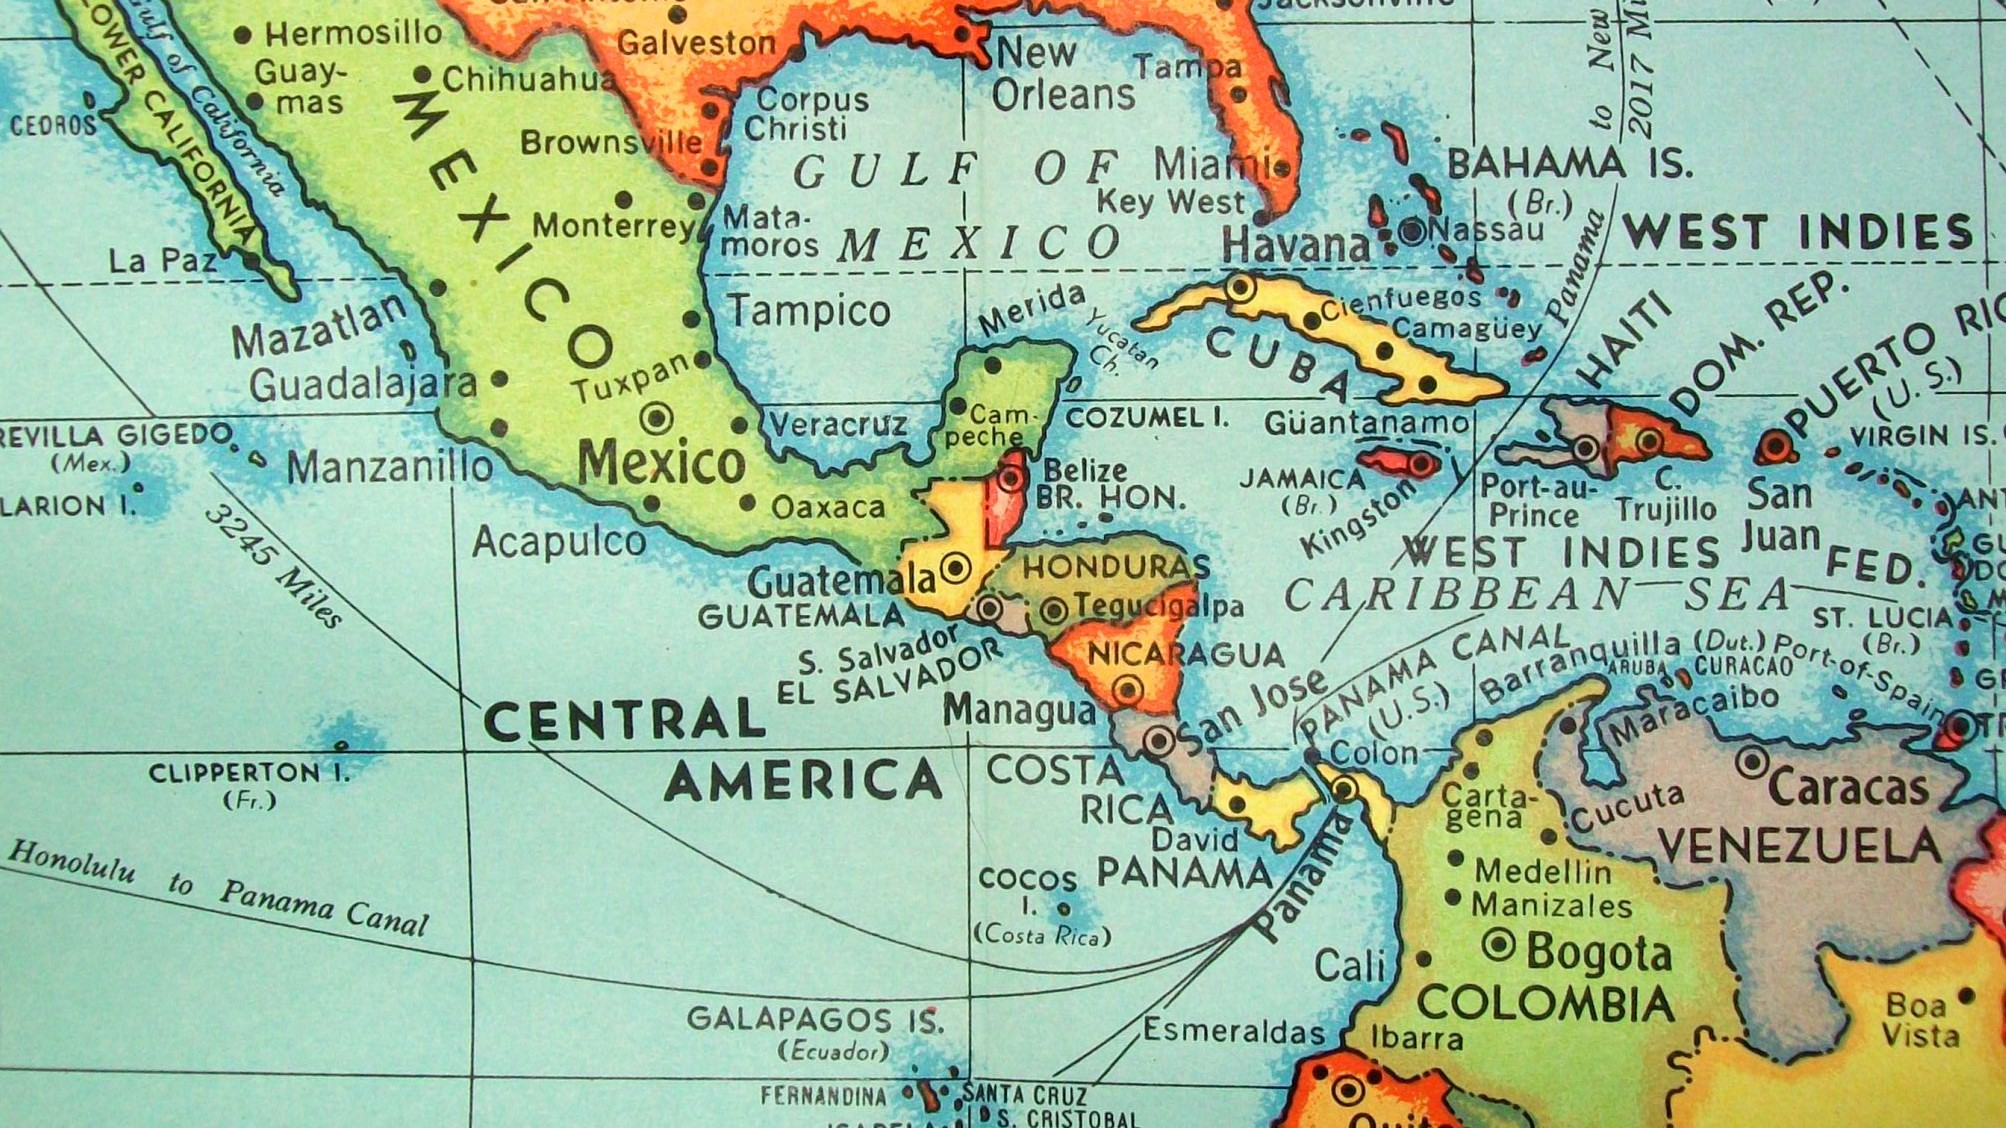 Инди на карте. Центральная Америка. West Indies на карте. Южная Америка Карибское море. Немецкая Центральная Америка.